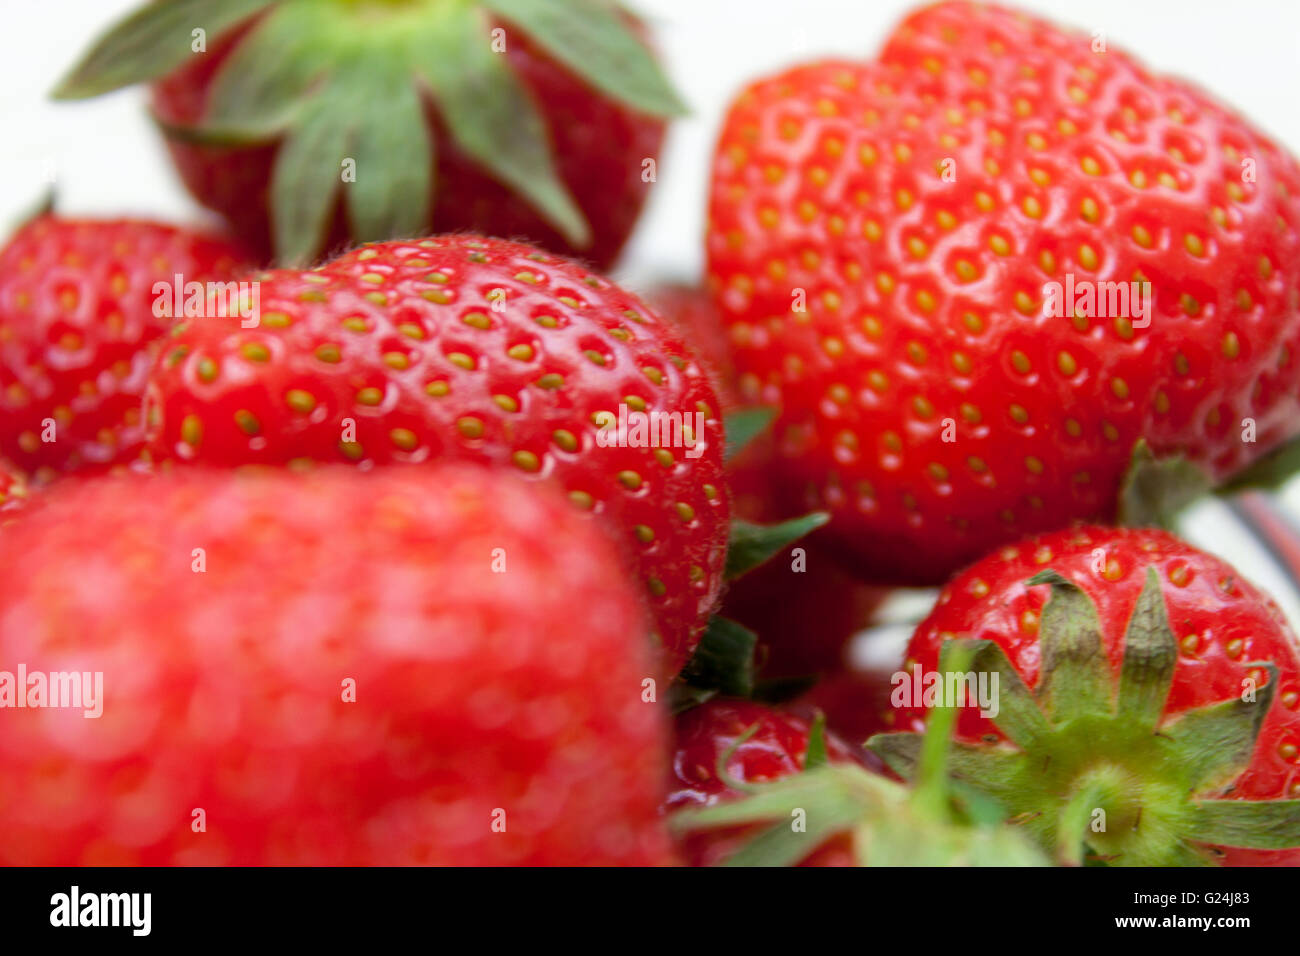 Gros plan de certains frais mûrs strawberrys avec leurs coques encore attaché Banque D'Images